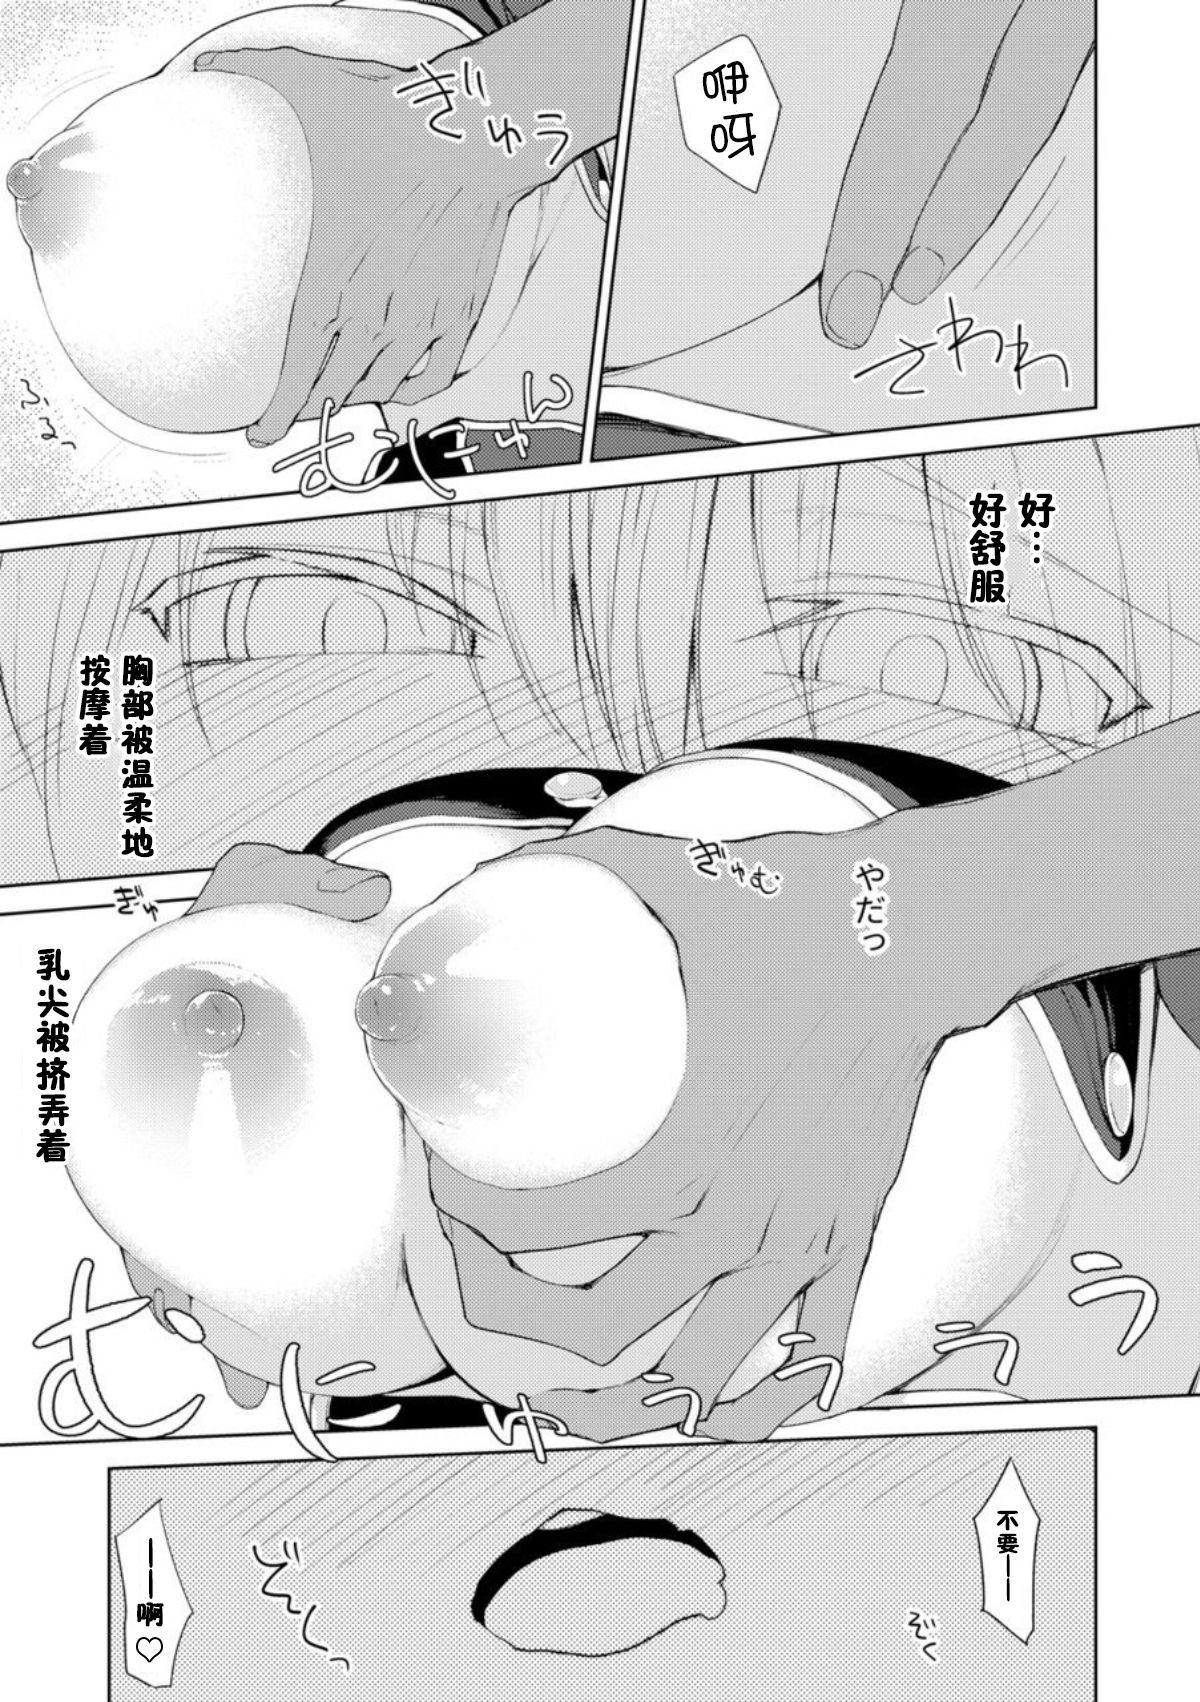 Bisexual Persis vs Oppai Seijin - Sennen sensou aigis Defloration - Page 10